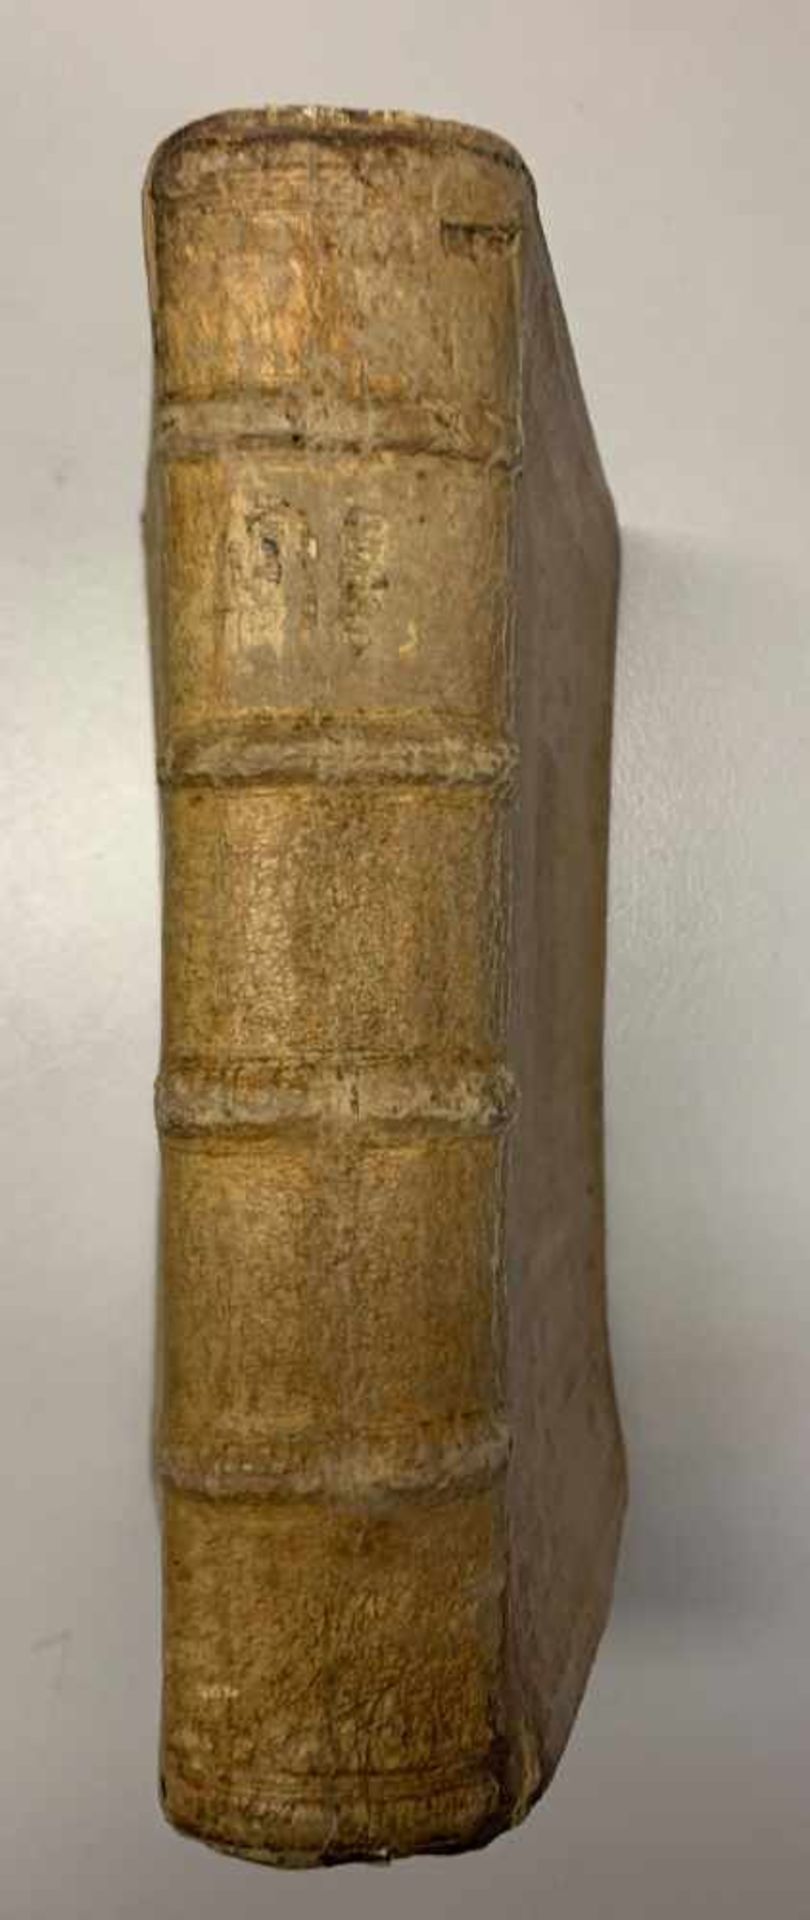 M. Valerii Martialis: Epigrammatum Libri XV. Paris 1607. sächsischer Wappeneinband. Schweinsleder. - Image 7 of 8